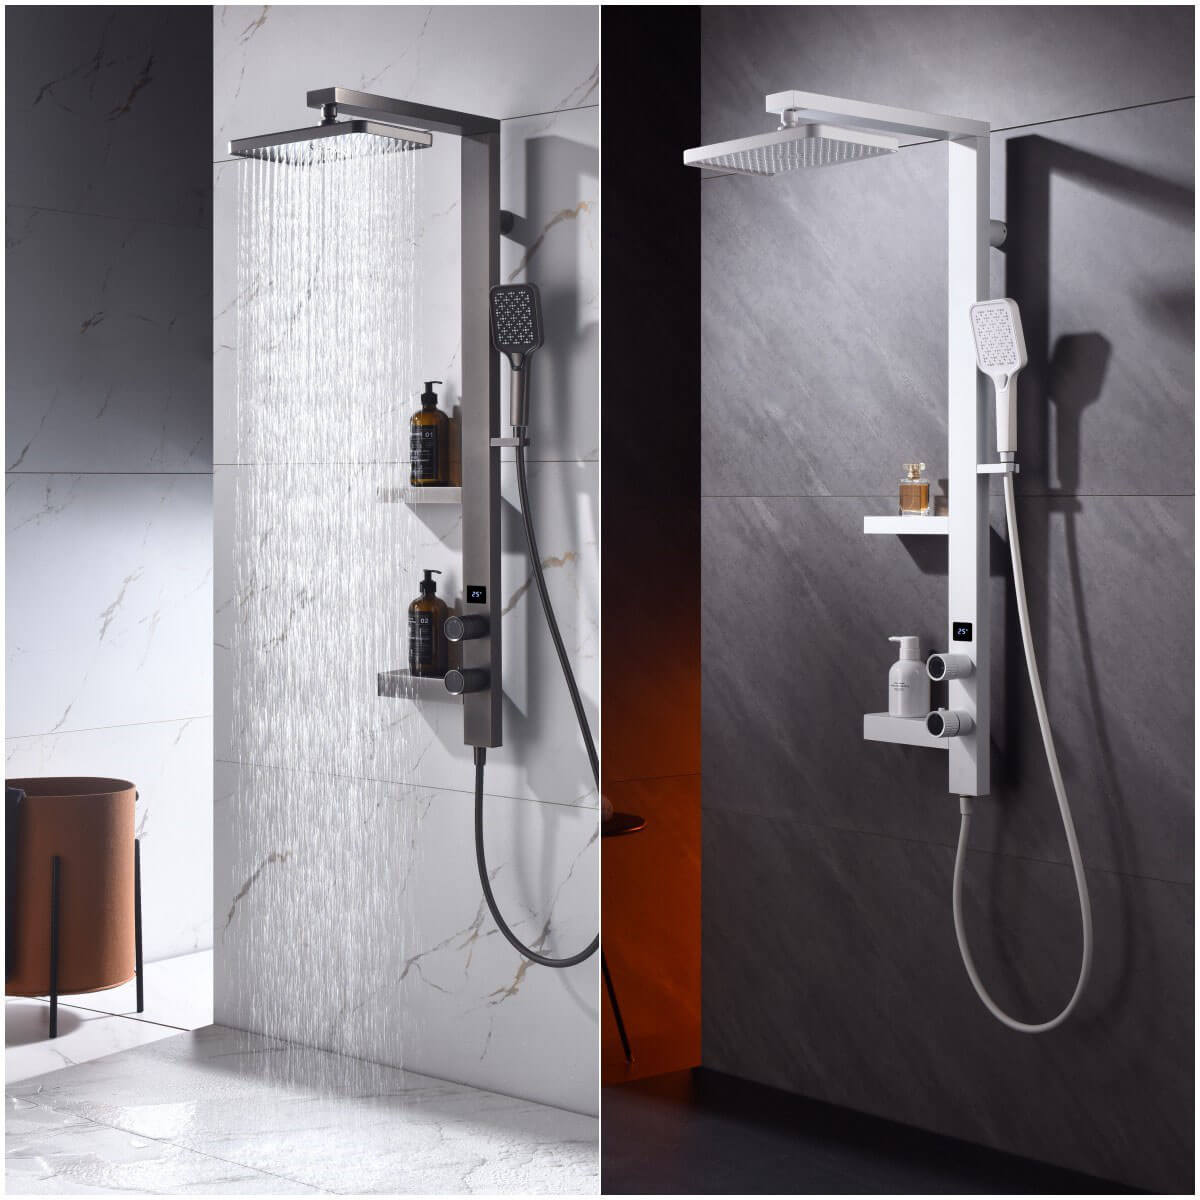 Homelody Luxuriöse 38°C Thermostat-Duschsäule Digitaler Bildschirm mit Ablageschale Duschset und Wasserfall-Auslauf